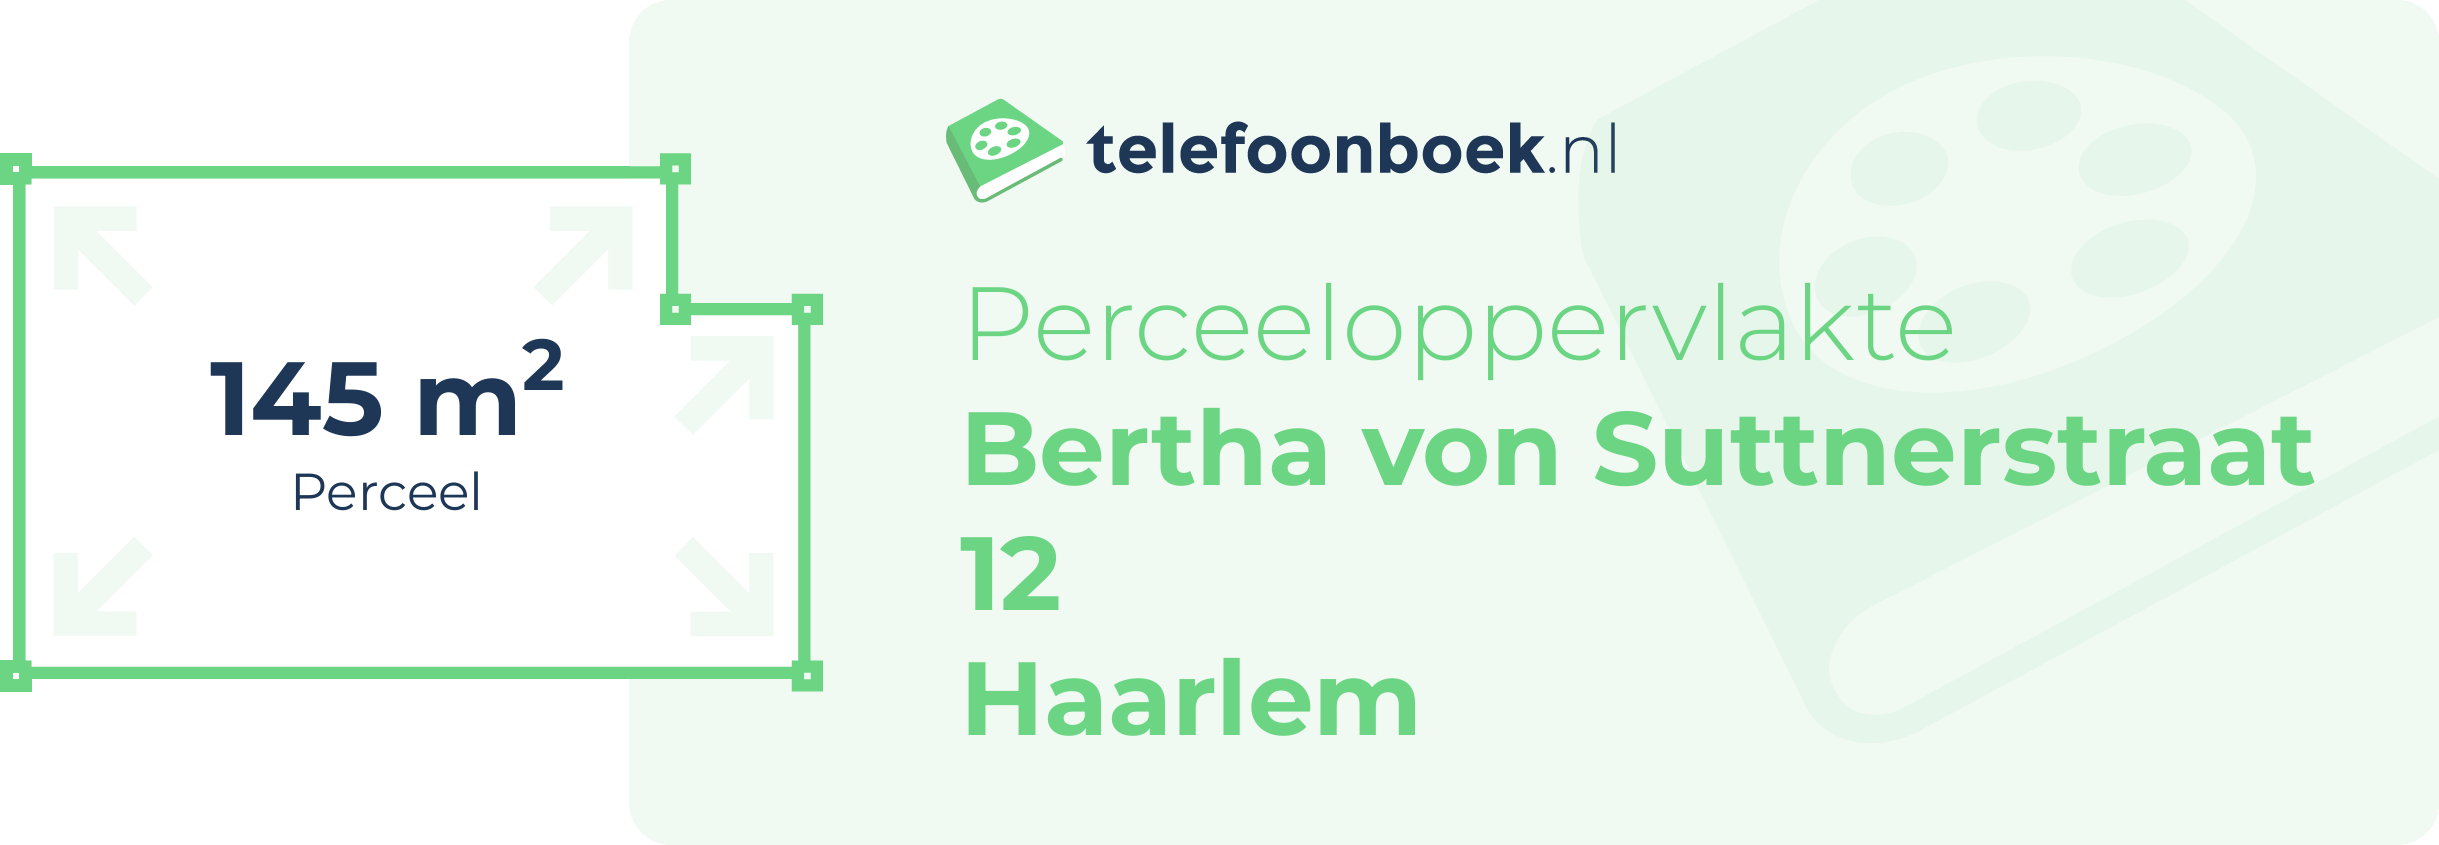 Perceeloppervlakte Bertha Von Suttnerstraat 12 Haarlem